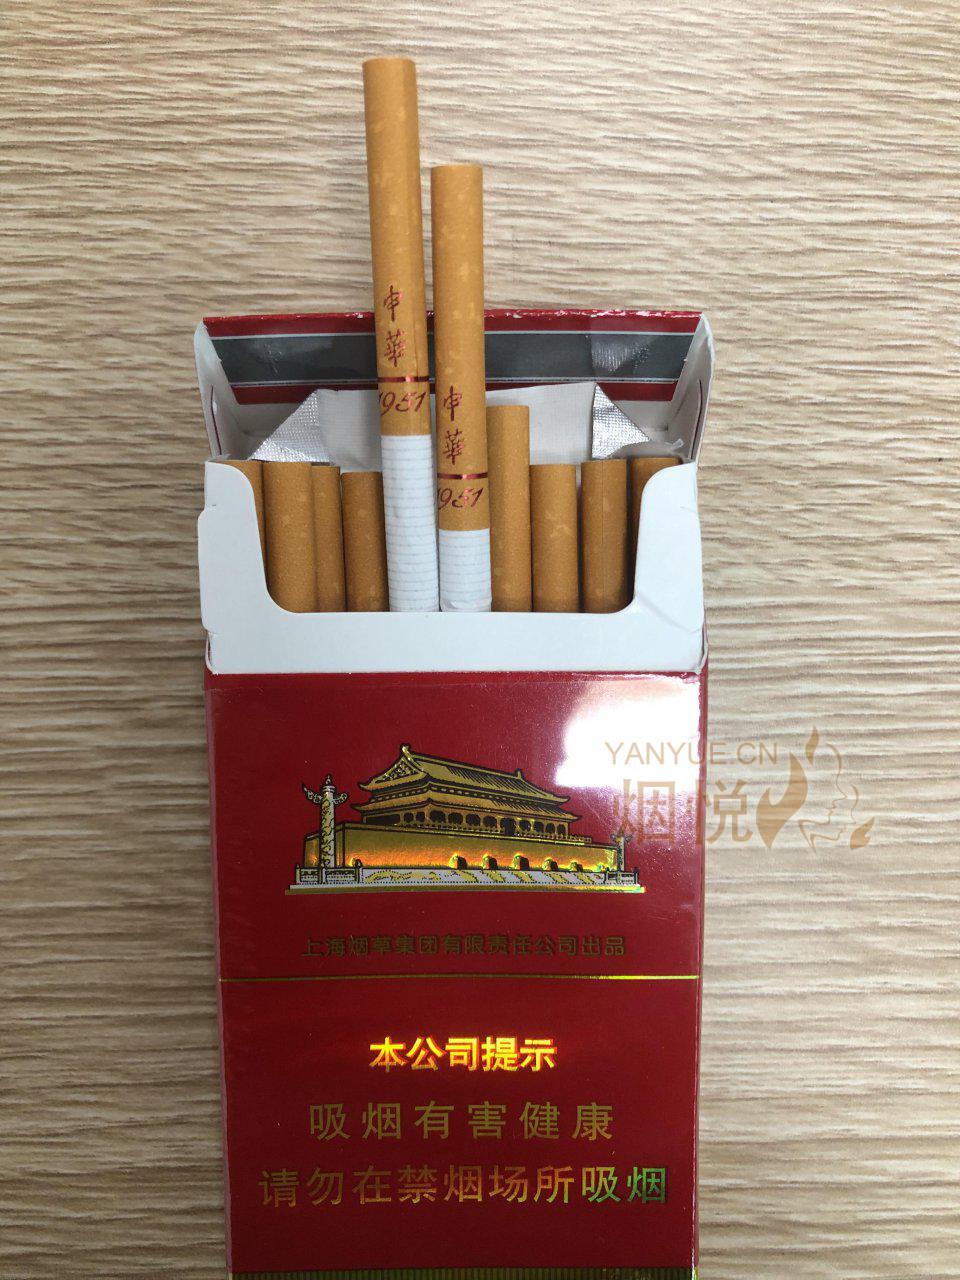 中华烟细支外包装图片